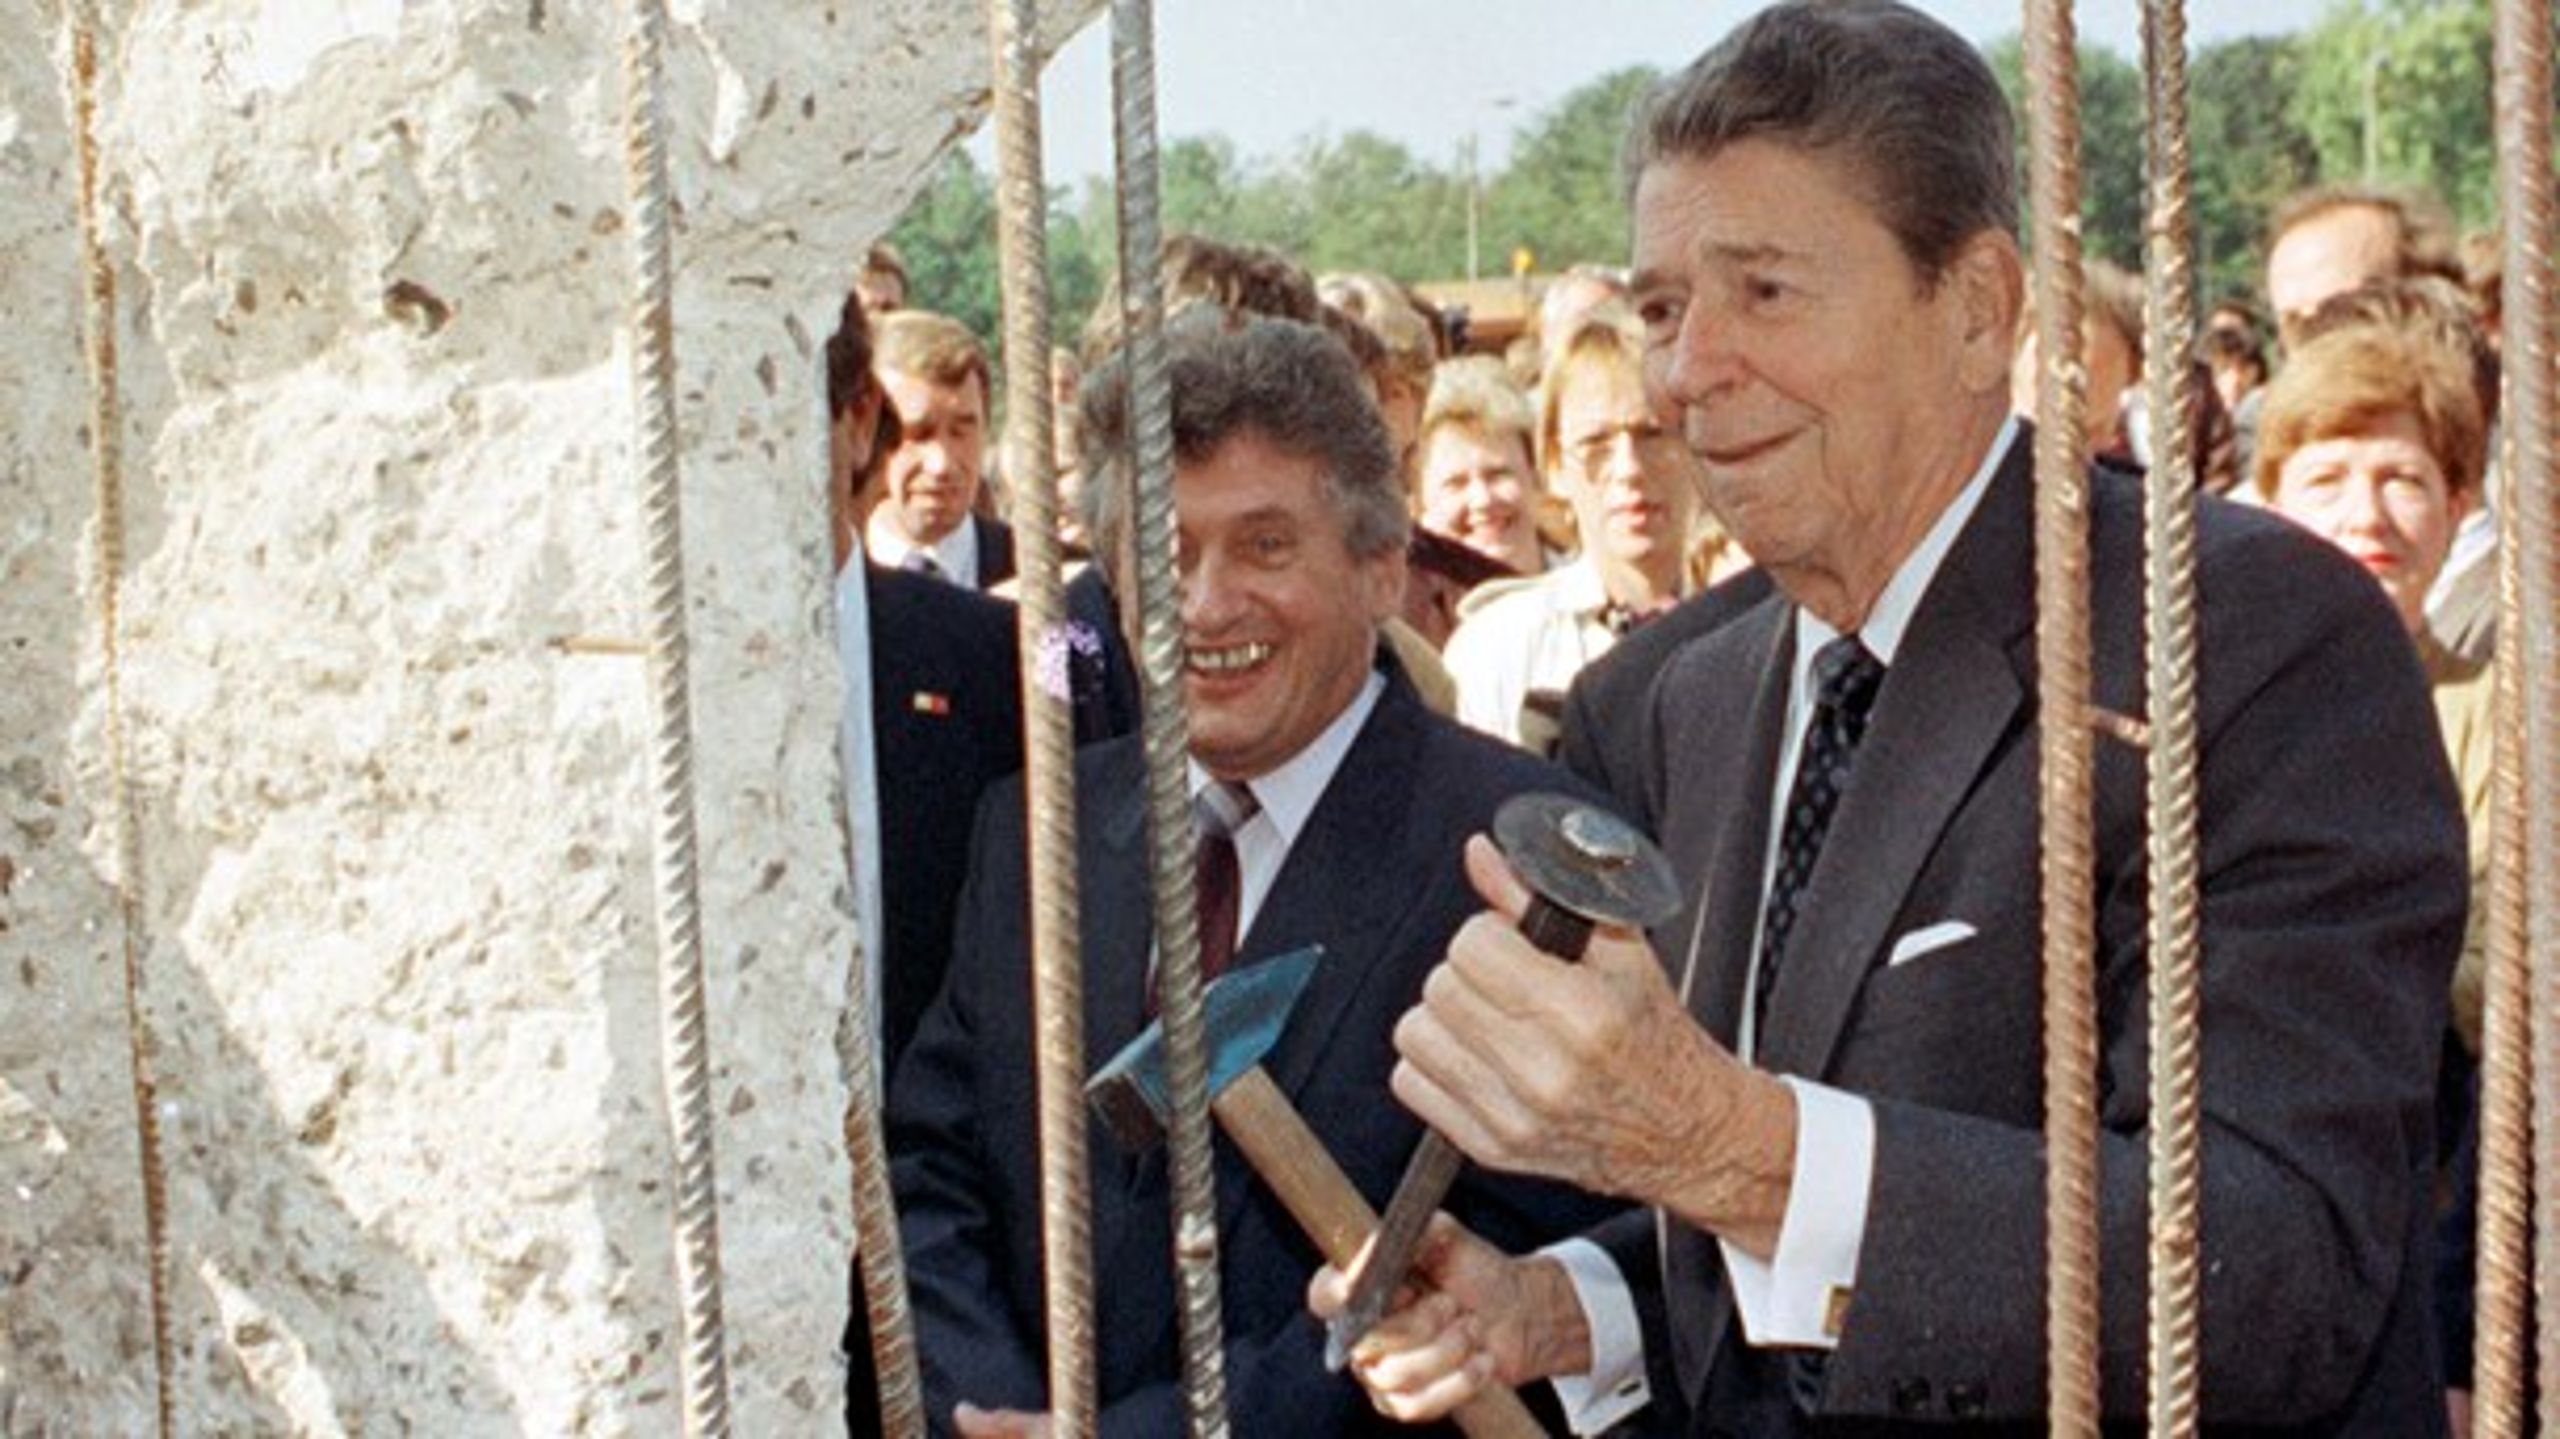 Denne mur vil falde, sagde præsident Ronald Reagan i en tale i Berlin i 1987. To år senere kunne han med hammer og mejsel i hånden se det ved selvsyn.